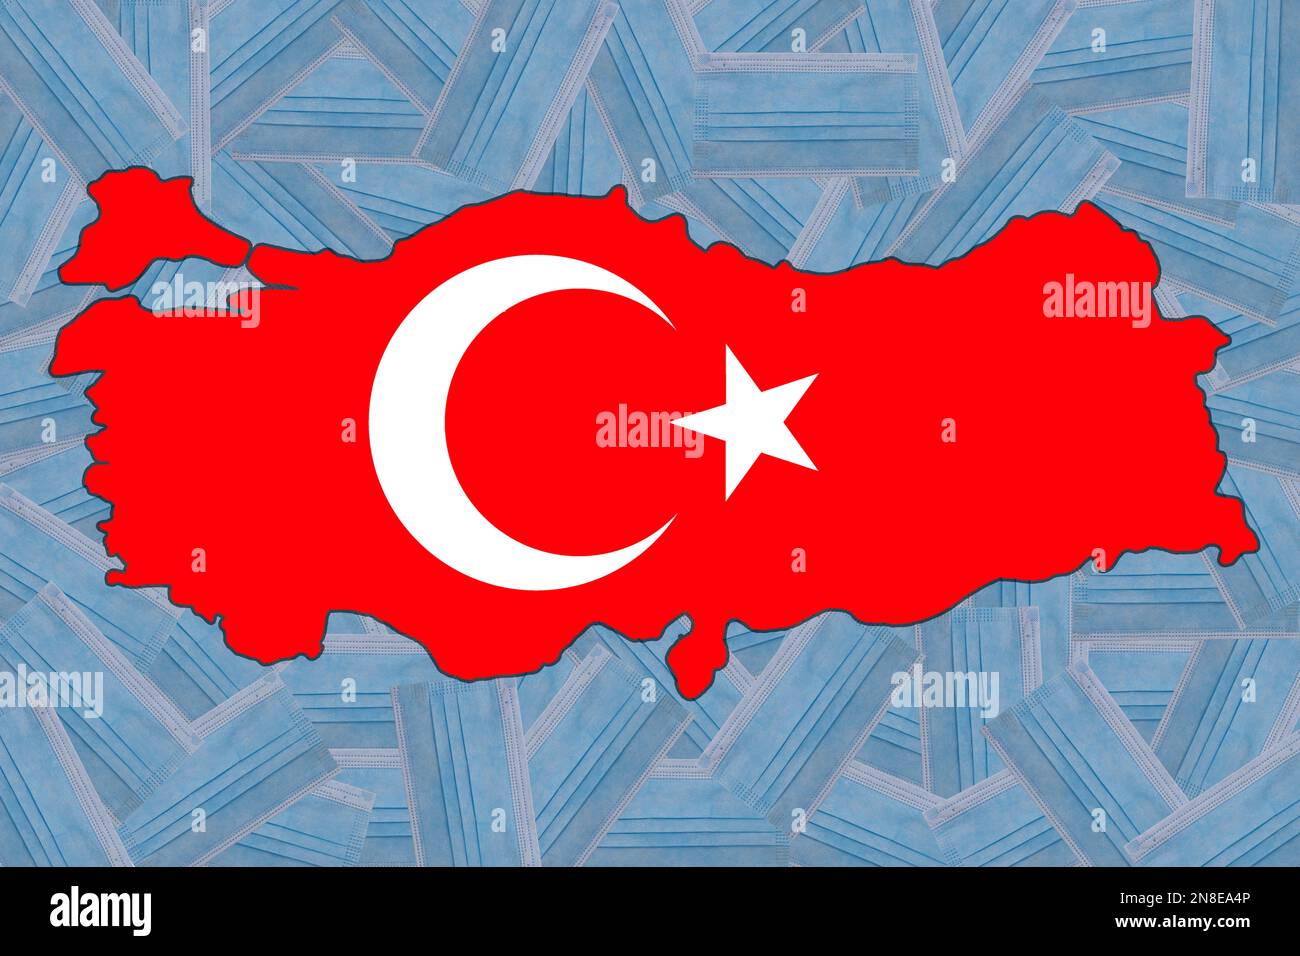 Flagge der Türkei in Form einer geografischen Karte der Türkei vor dem  Hintergrund zufällig platzierter blauer medizinischer Masken. Pandemie.  Quarantäne. Null Covid Stockfotografie - Alamy